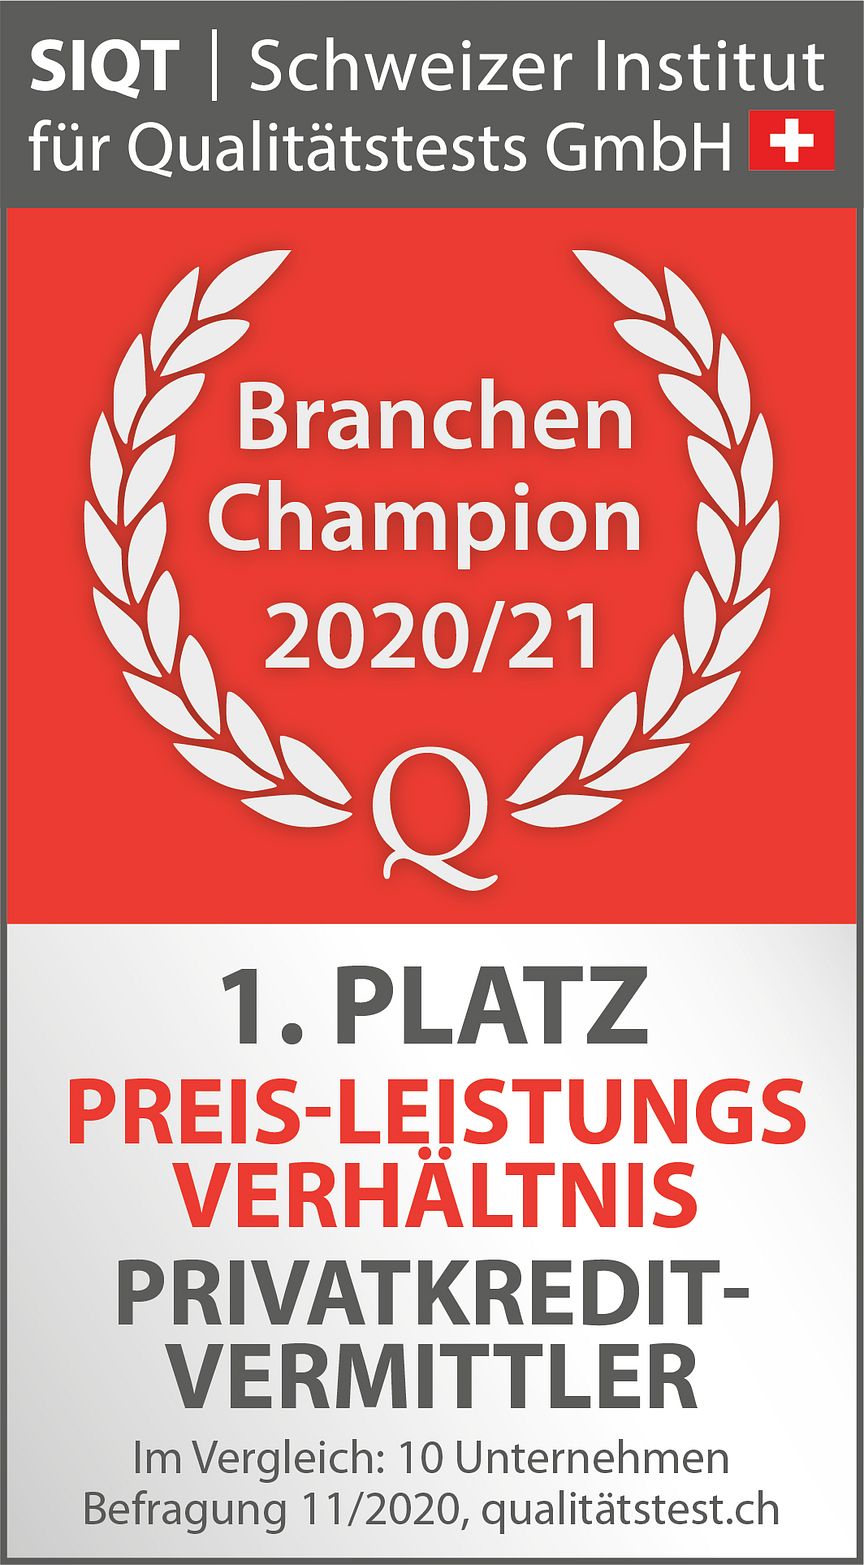 Siegel_BranchenChampion_1Platz_PreisLeistung_FinanceScout24.jpg